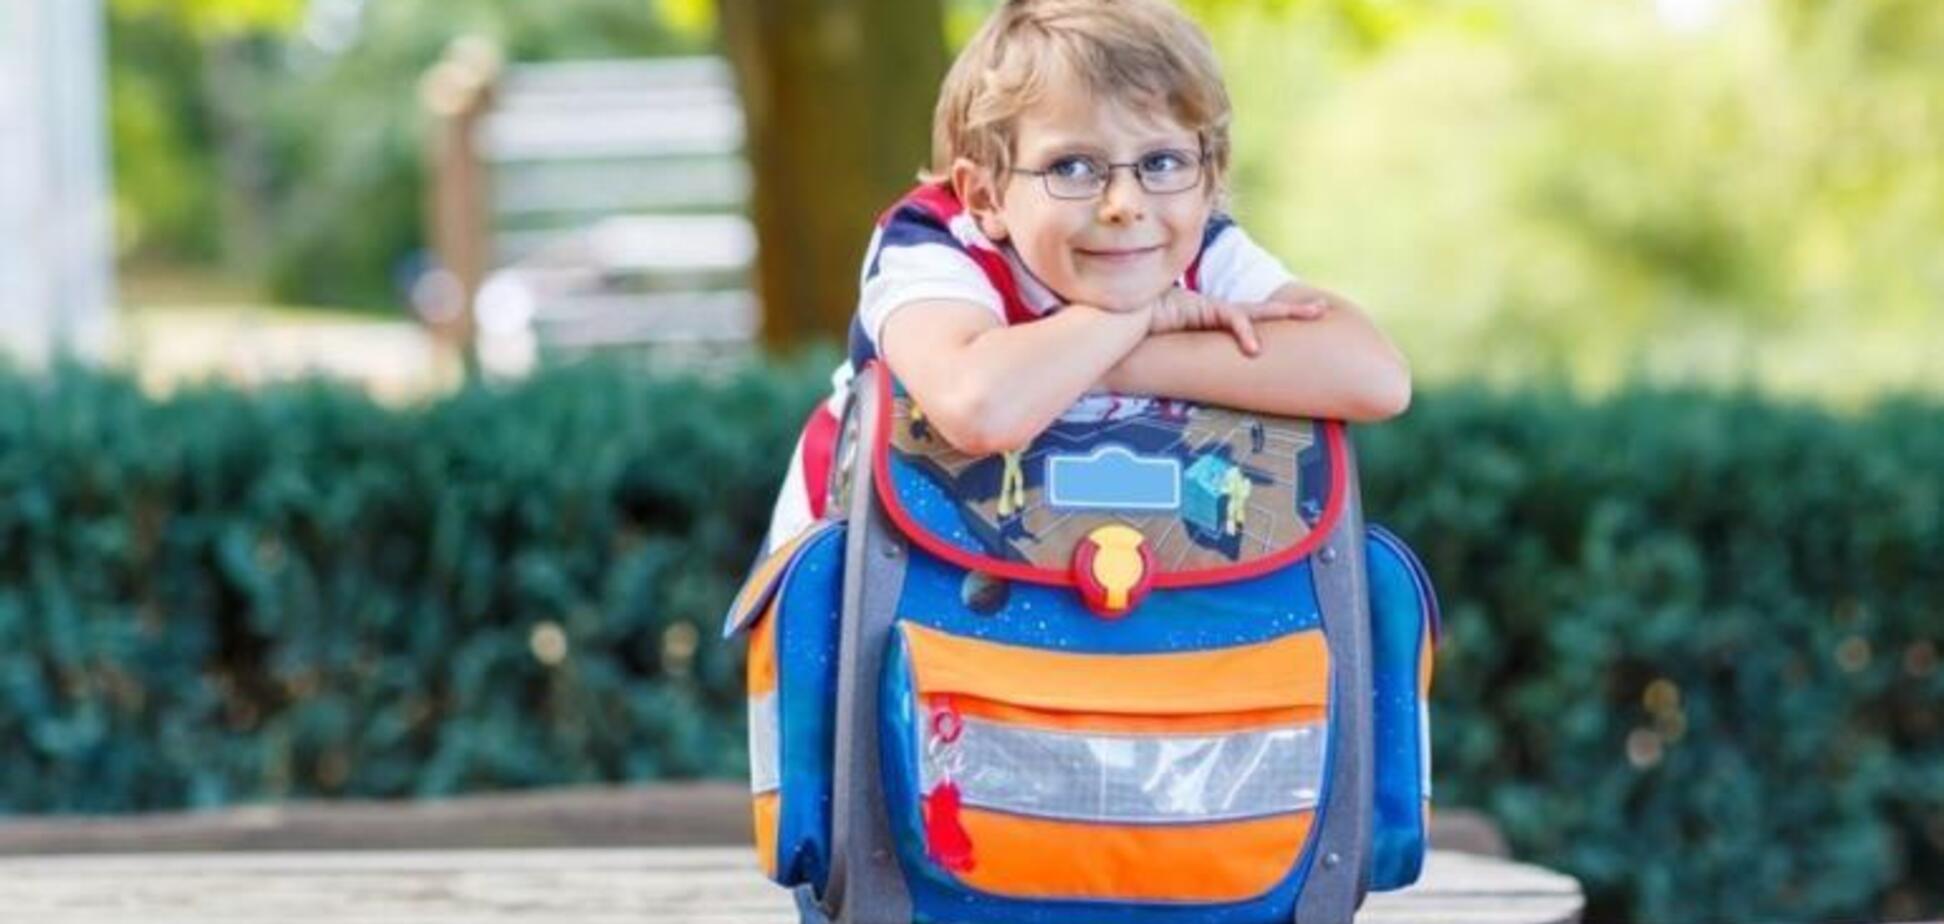 Ученые рассказали, может ли тяжелый портфель вызвать сколиоз у школьника